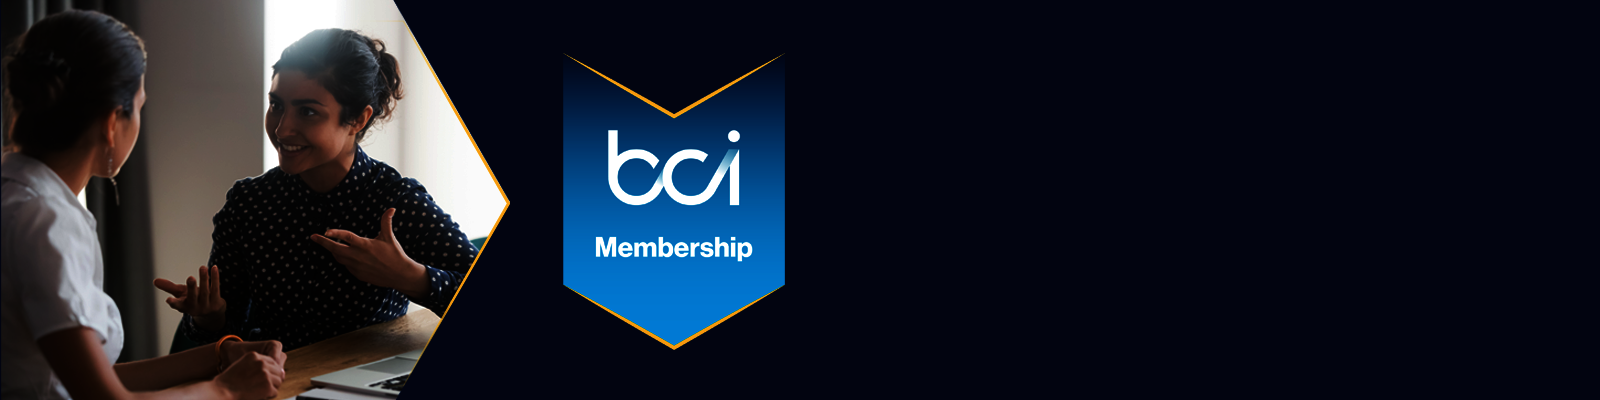 membership benefits.png